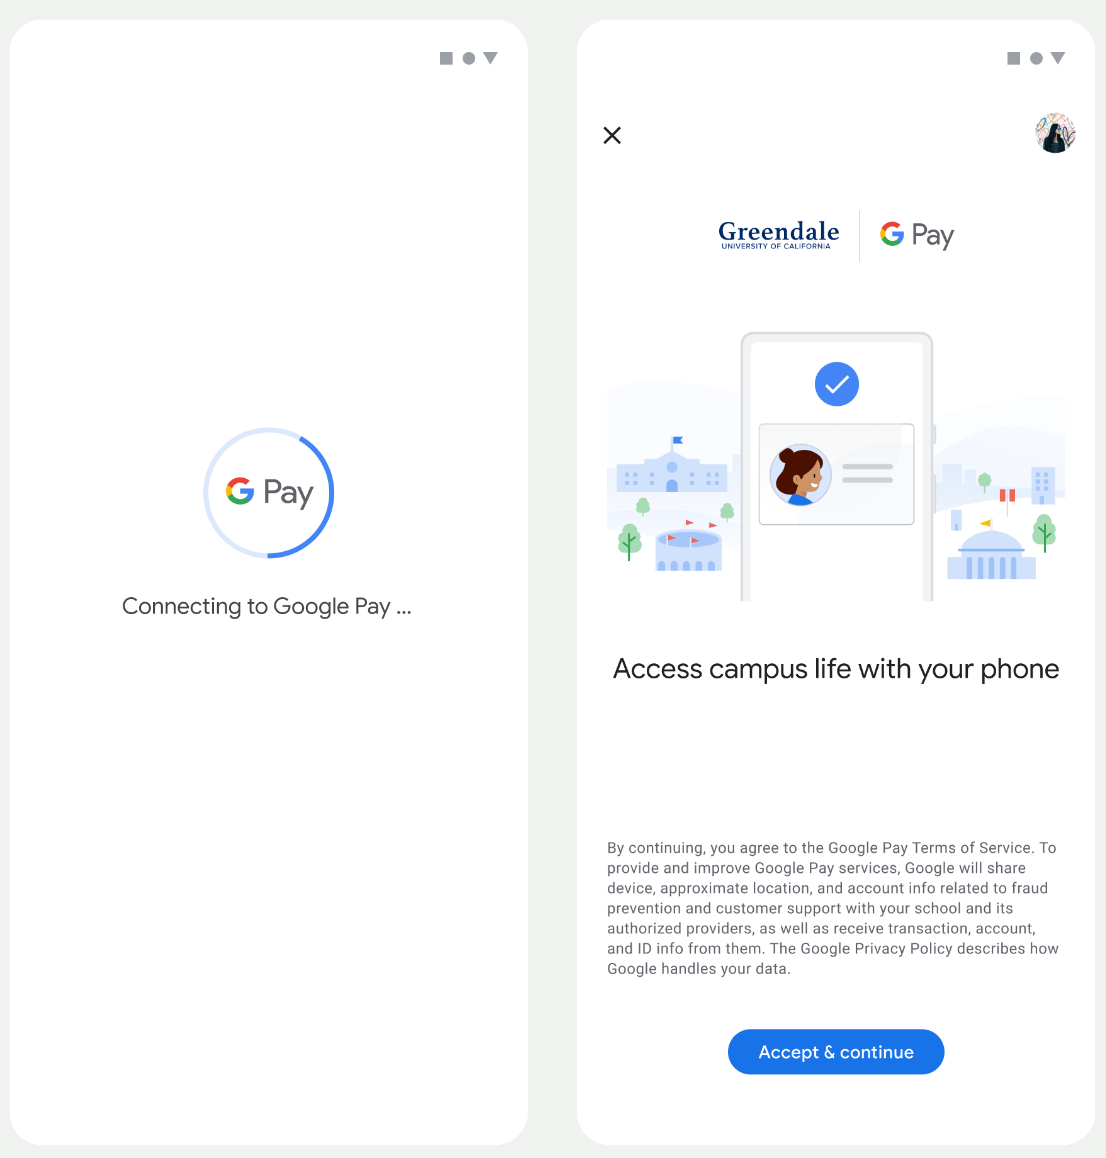 最初の画面では、アプリが Google ウォレットに接続します。2 番目の画面で、ユーザーが利用規約に同意し、続行します。